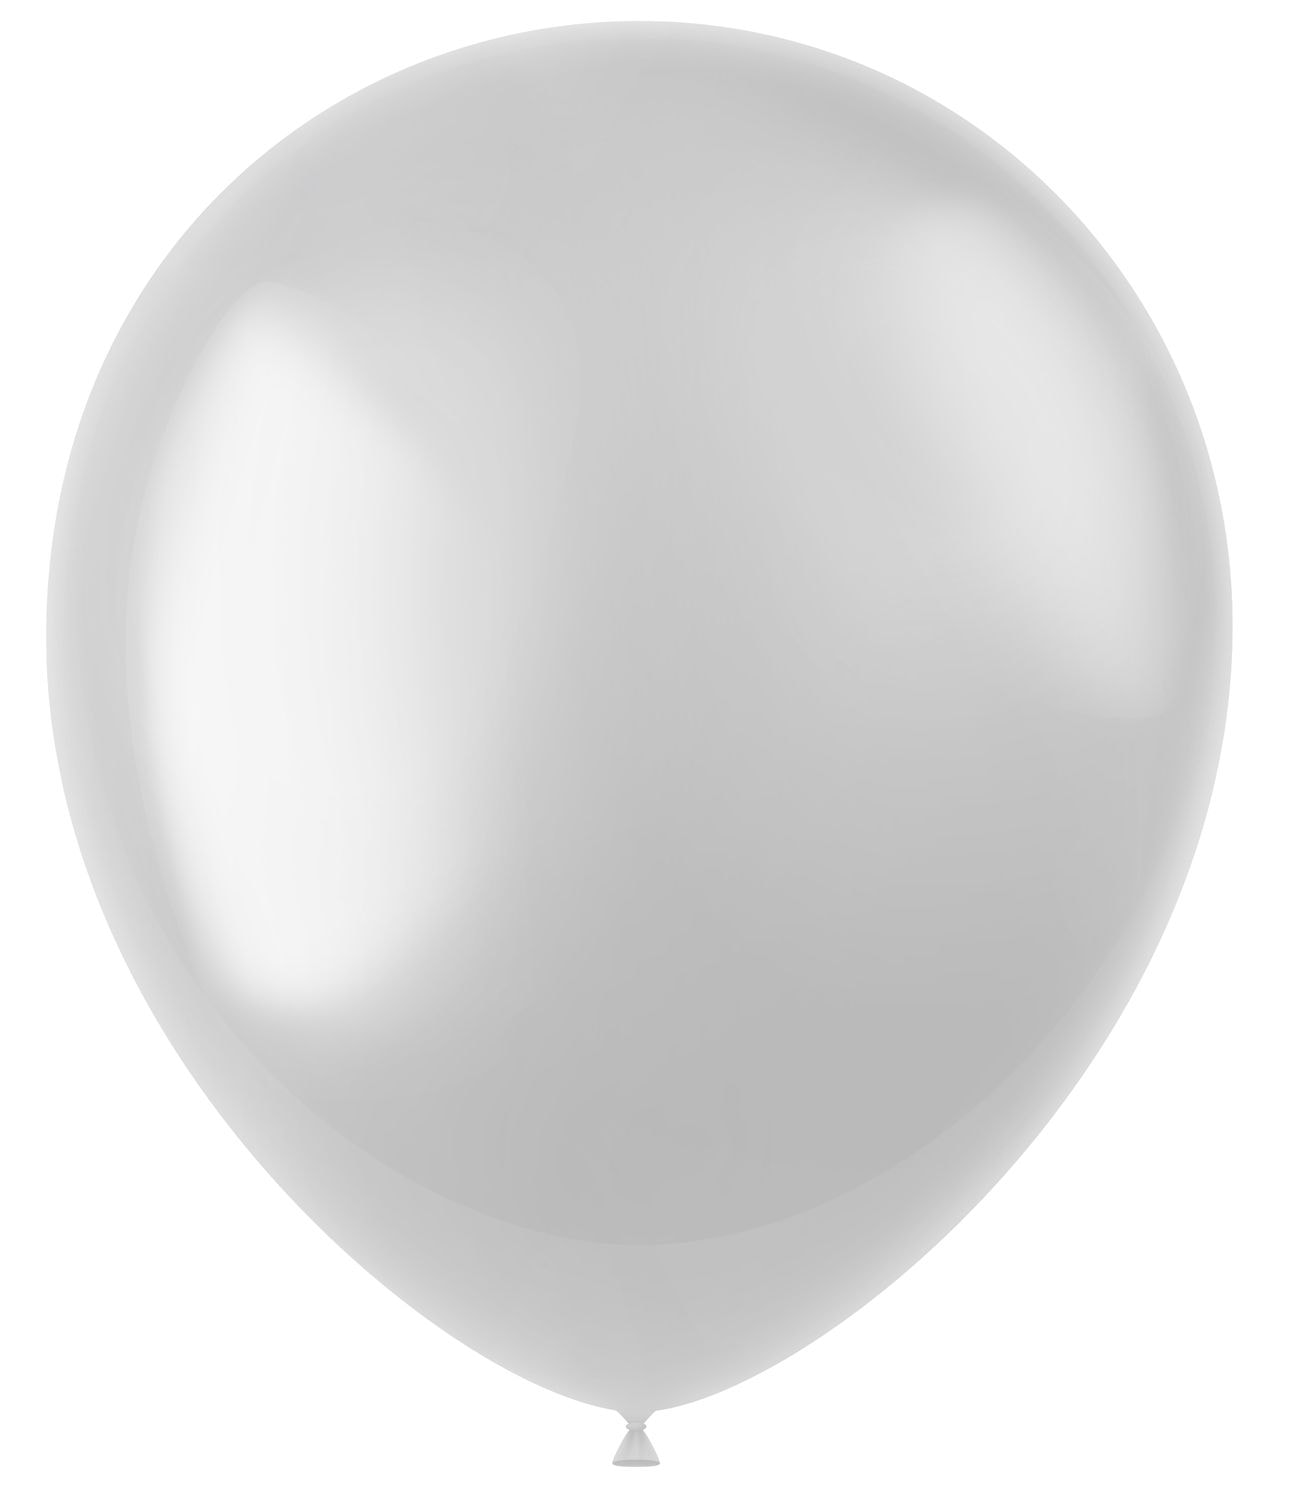 50 metallic ballonnen pearl white 33cm